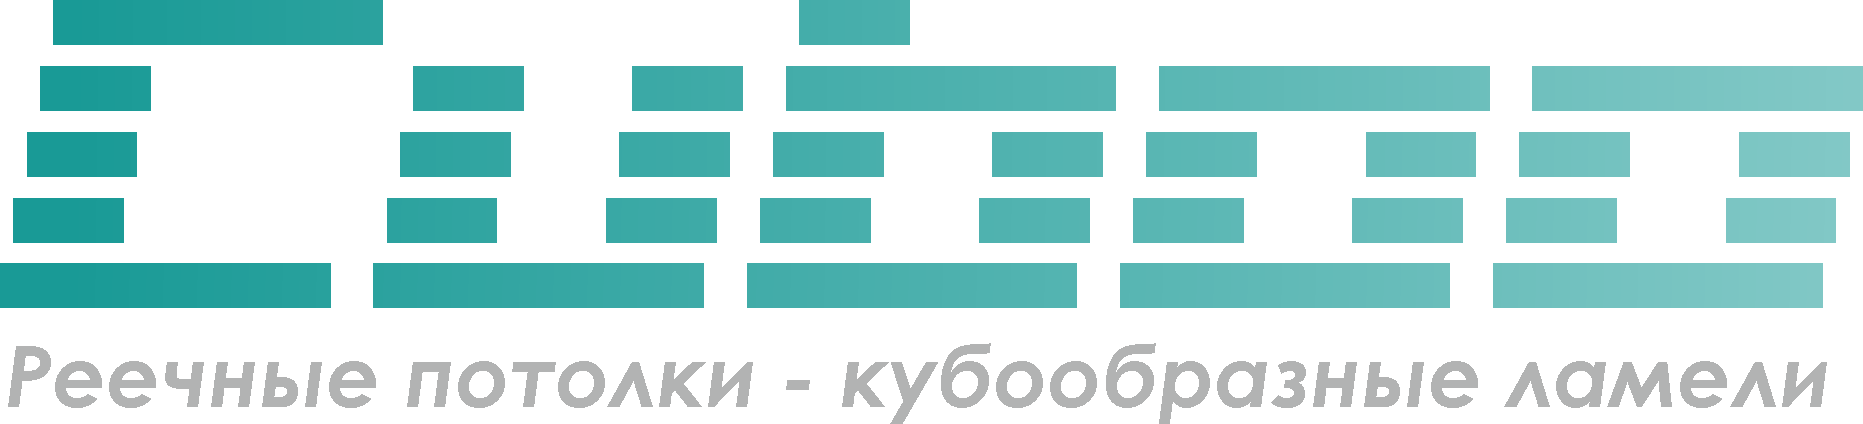 Логотип Российского производителя кубообразых потолков